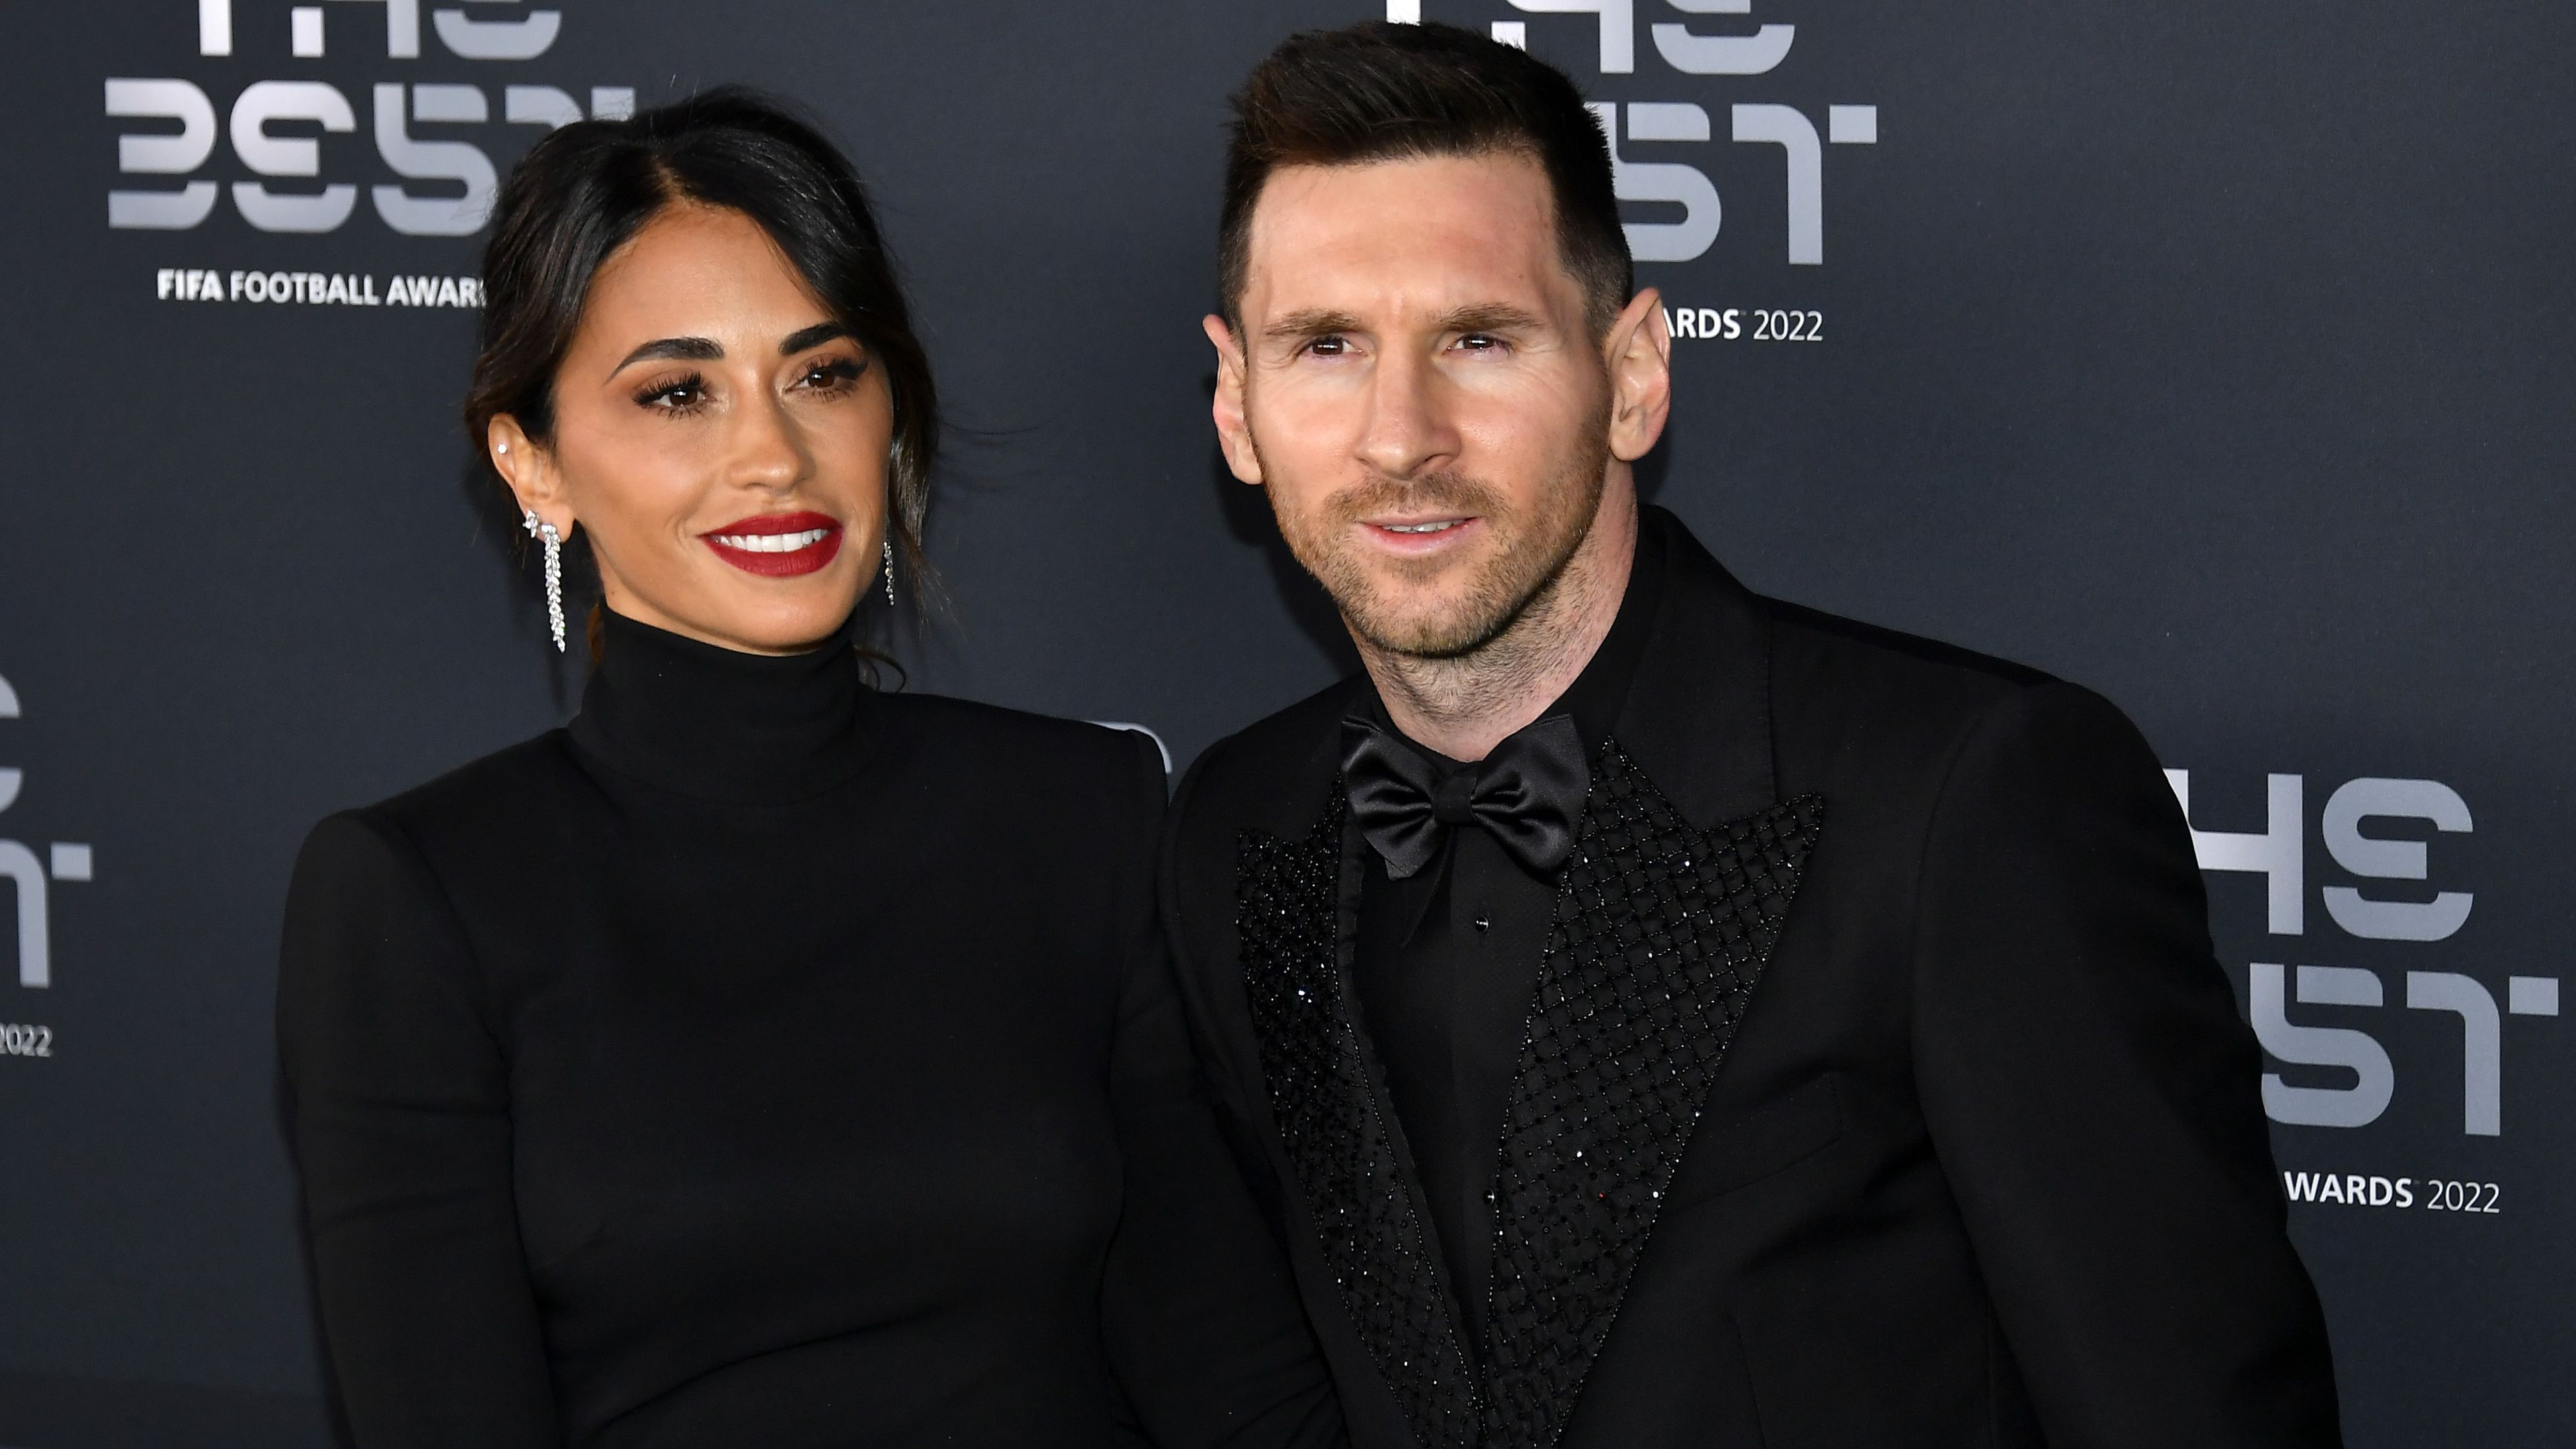 Lionel Messit felesége is elkísérte a gálára.